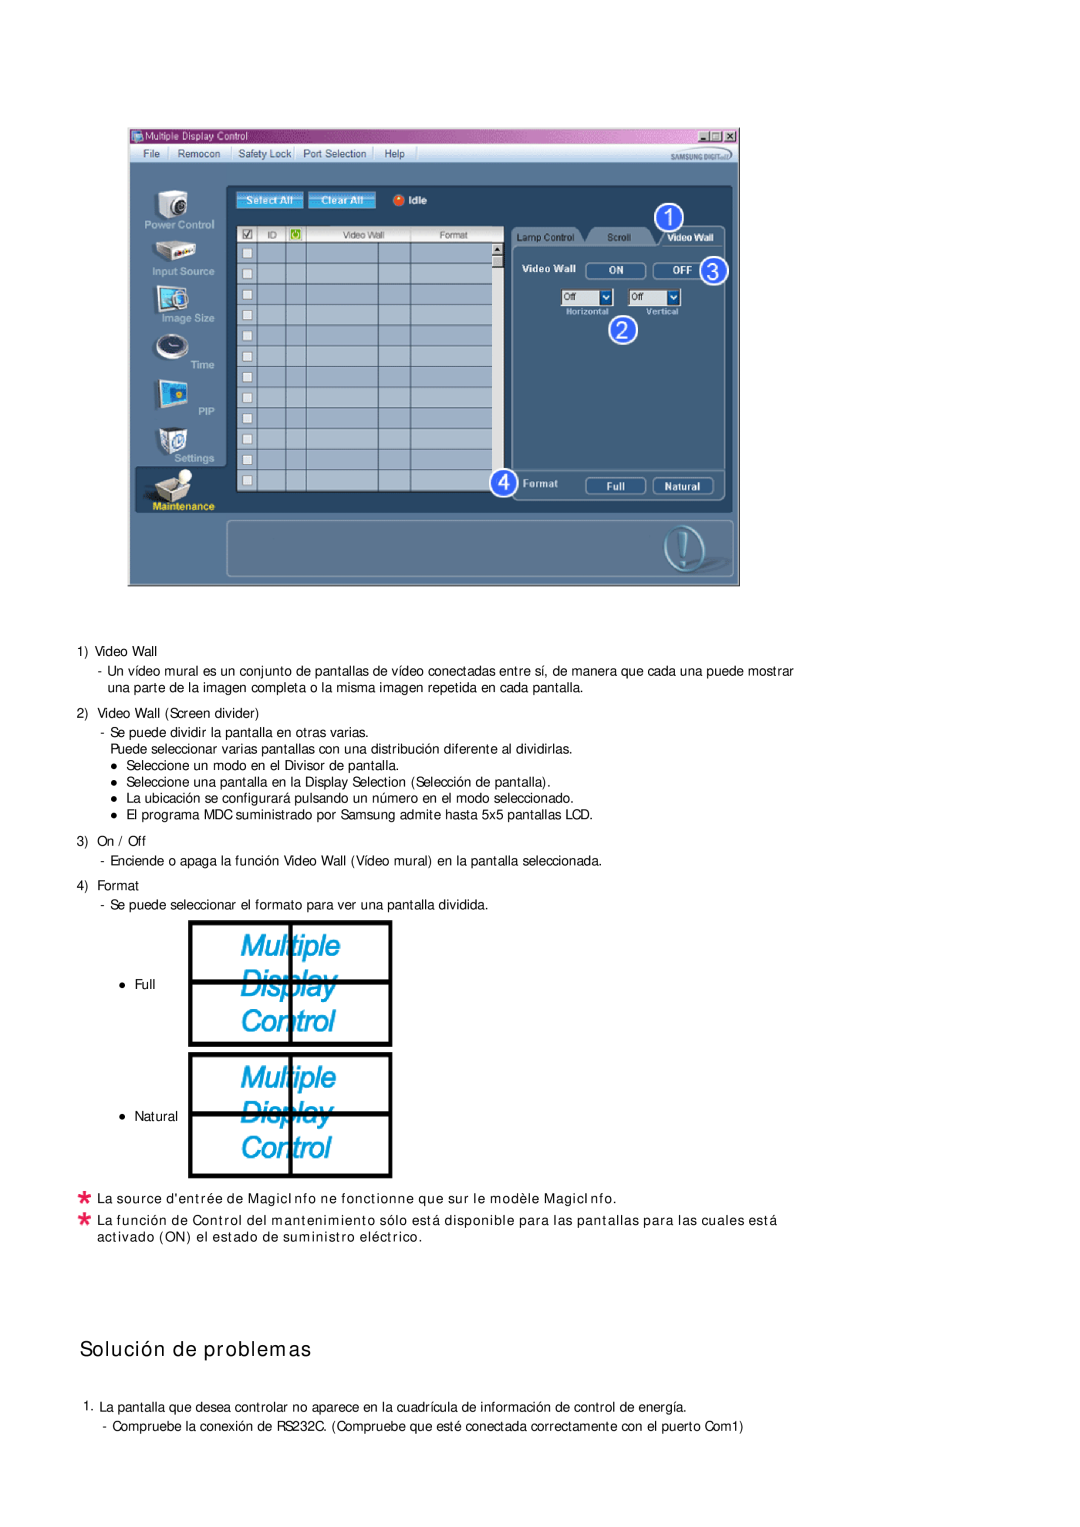 Samsung LH46TCUMBG/EN, LH40TCUMBG/EN, LH46TCUMBC/EN, LH40TCQMBG/EN, LH40TCUMBC/EN manual Solución de problemas 